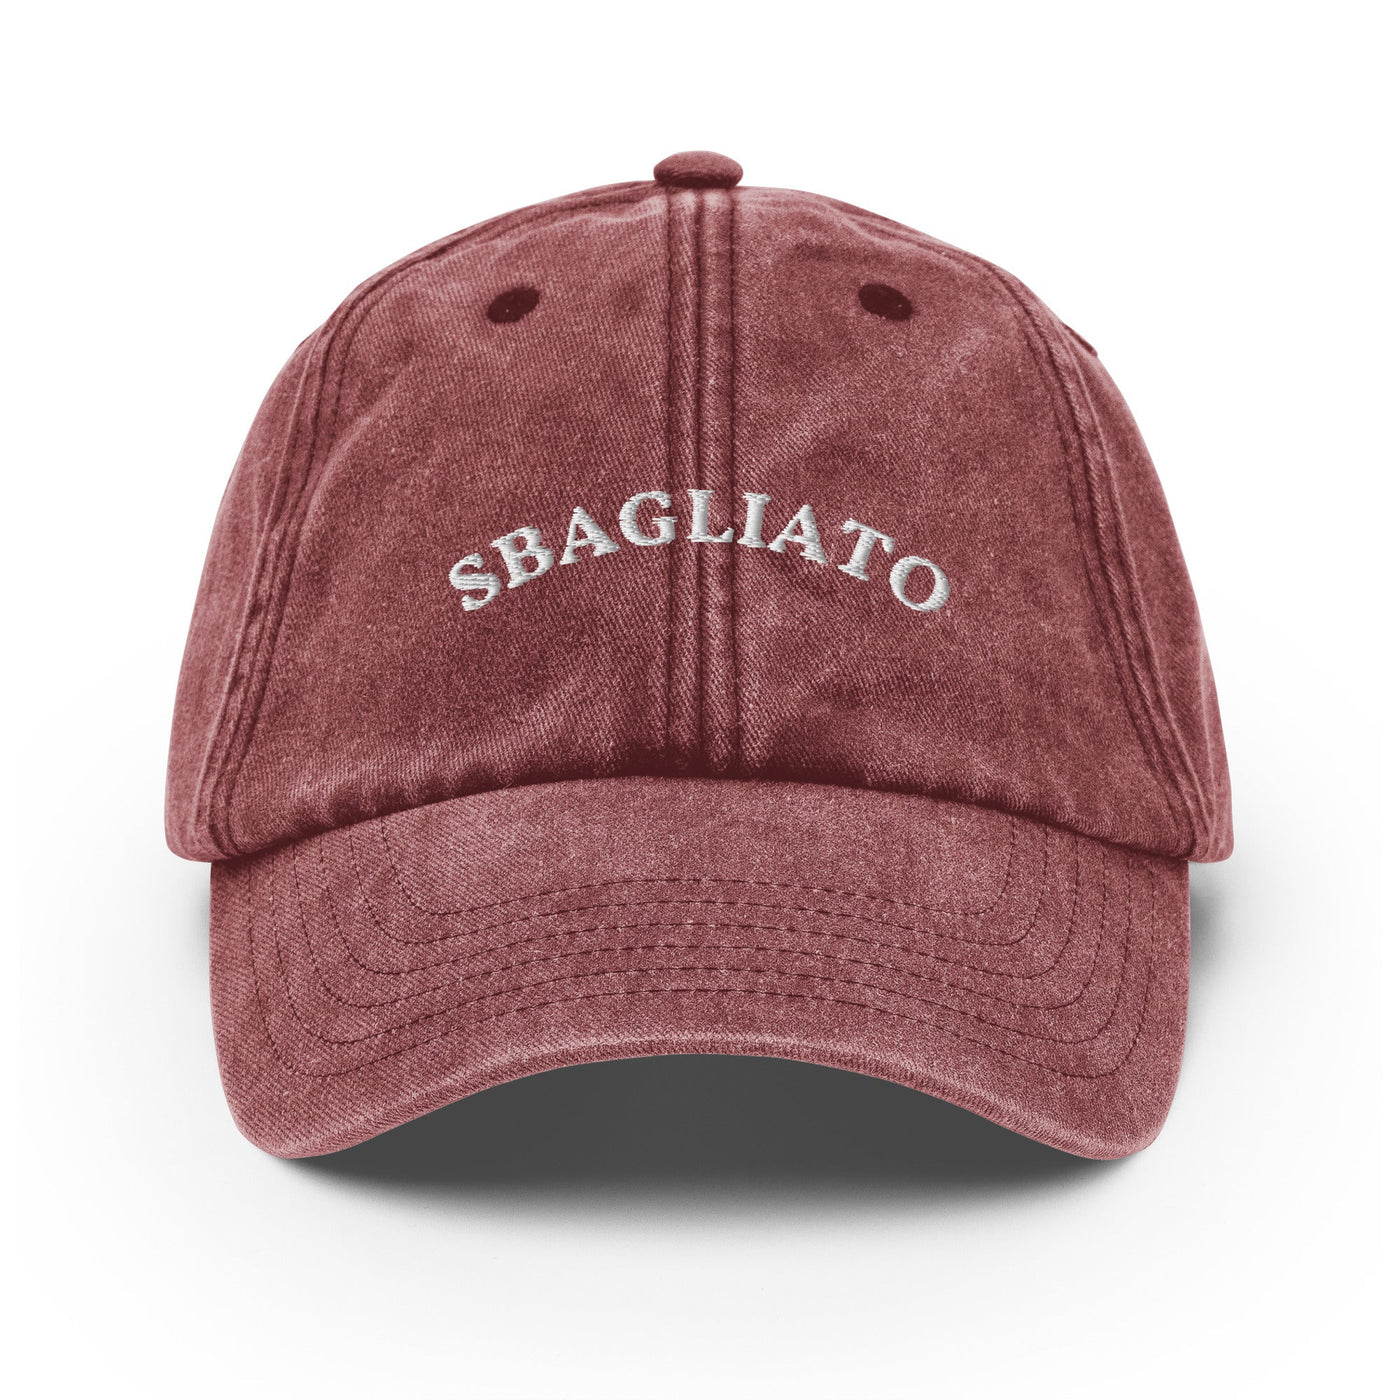 Sbagliato - Embroidered Vintage Cap